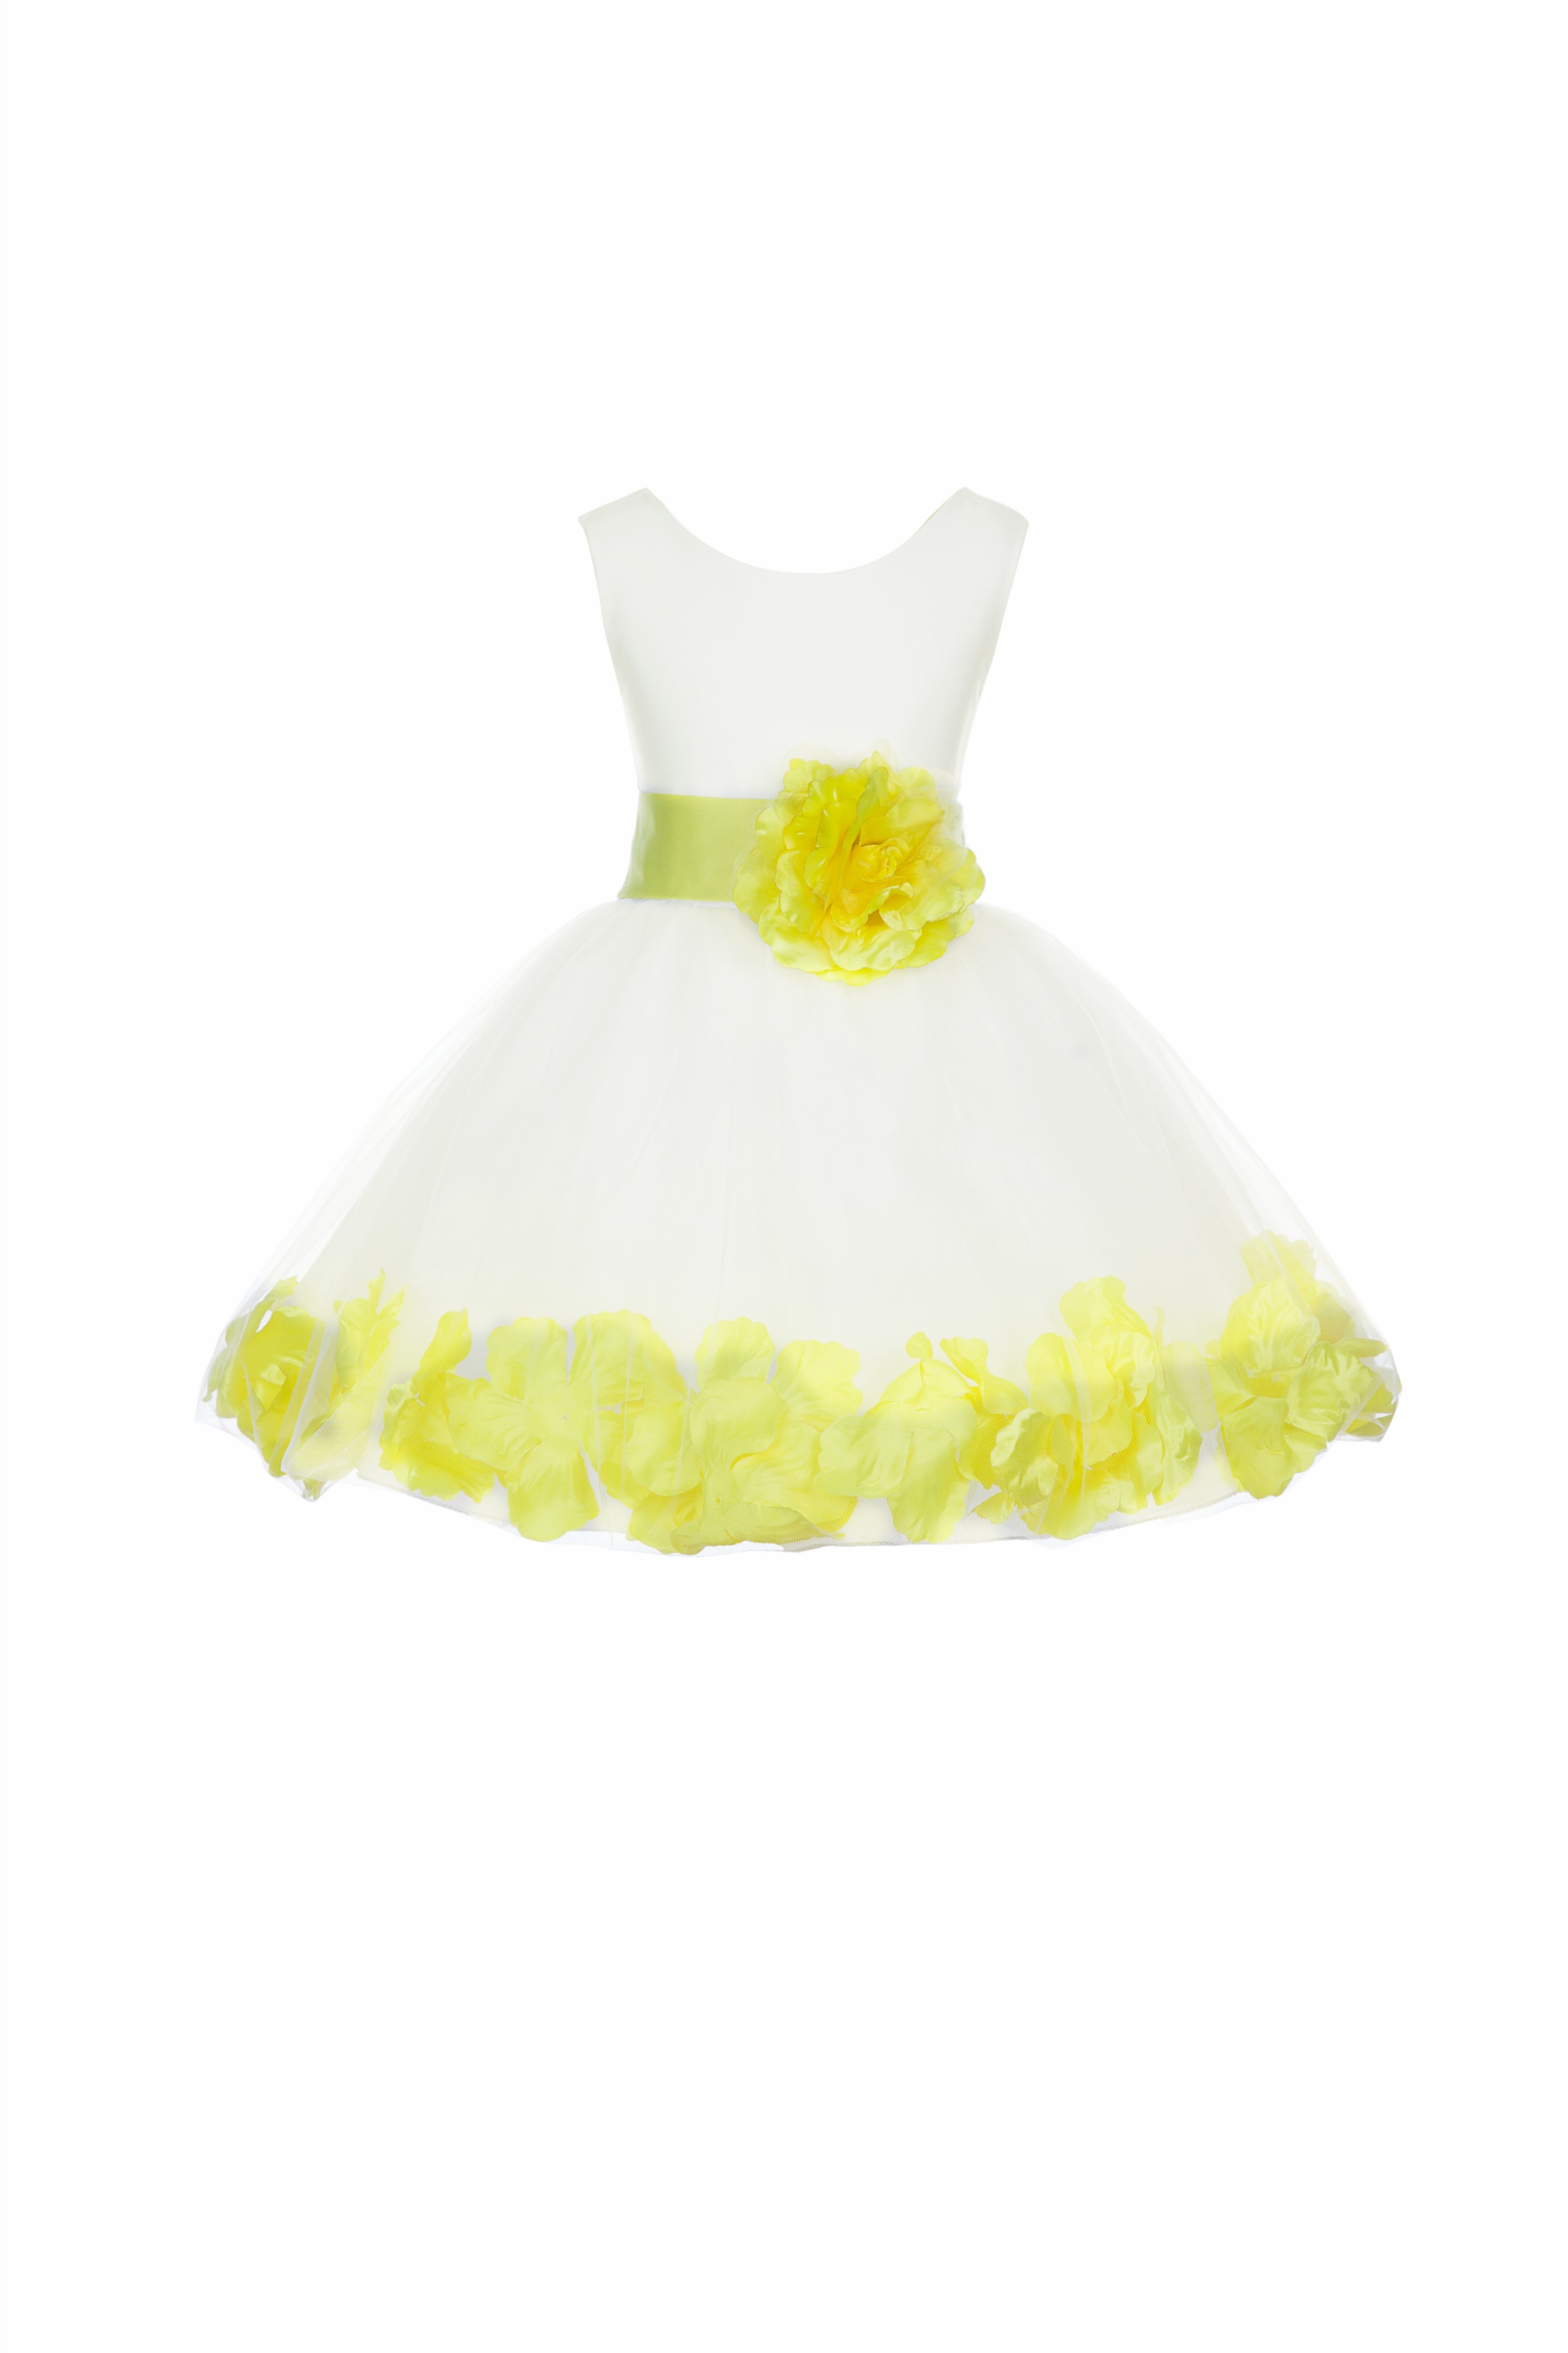 Ivory/Lemon Tulle Rose Petals Knee Length Flower Girl Dress 306S